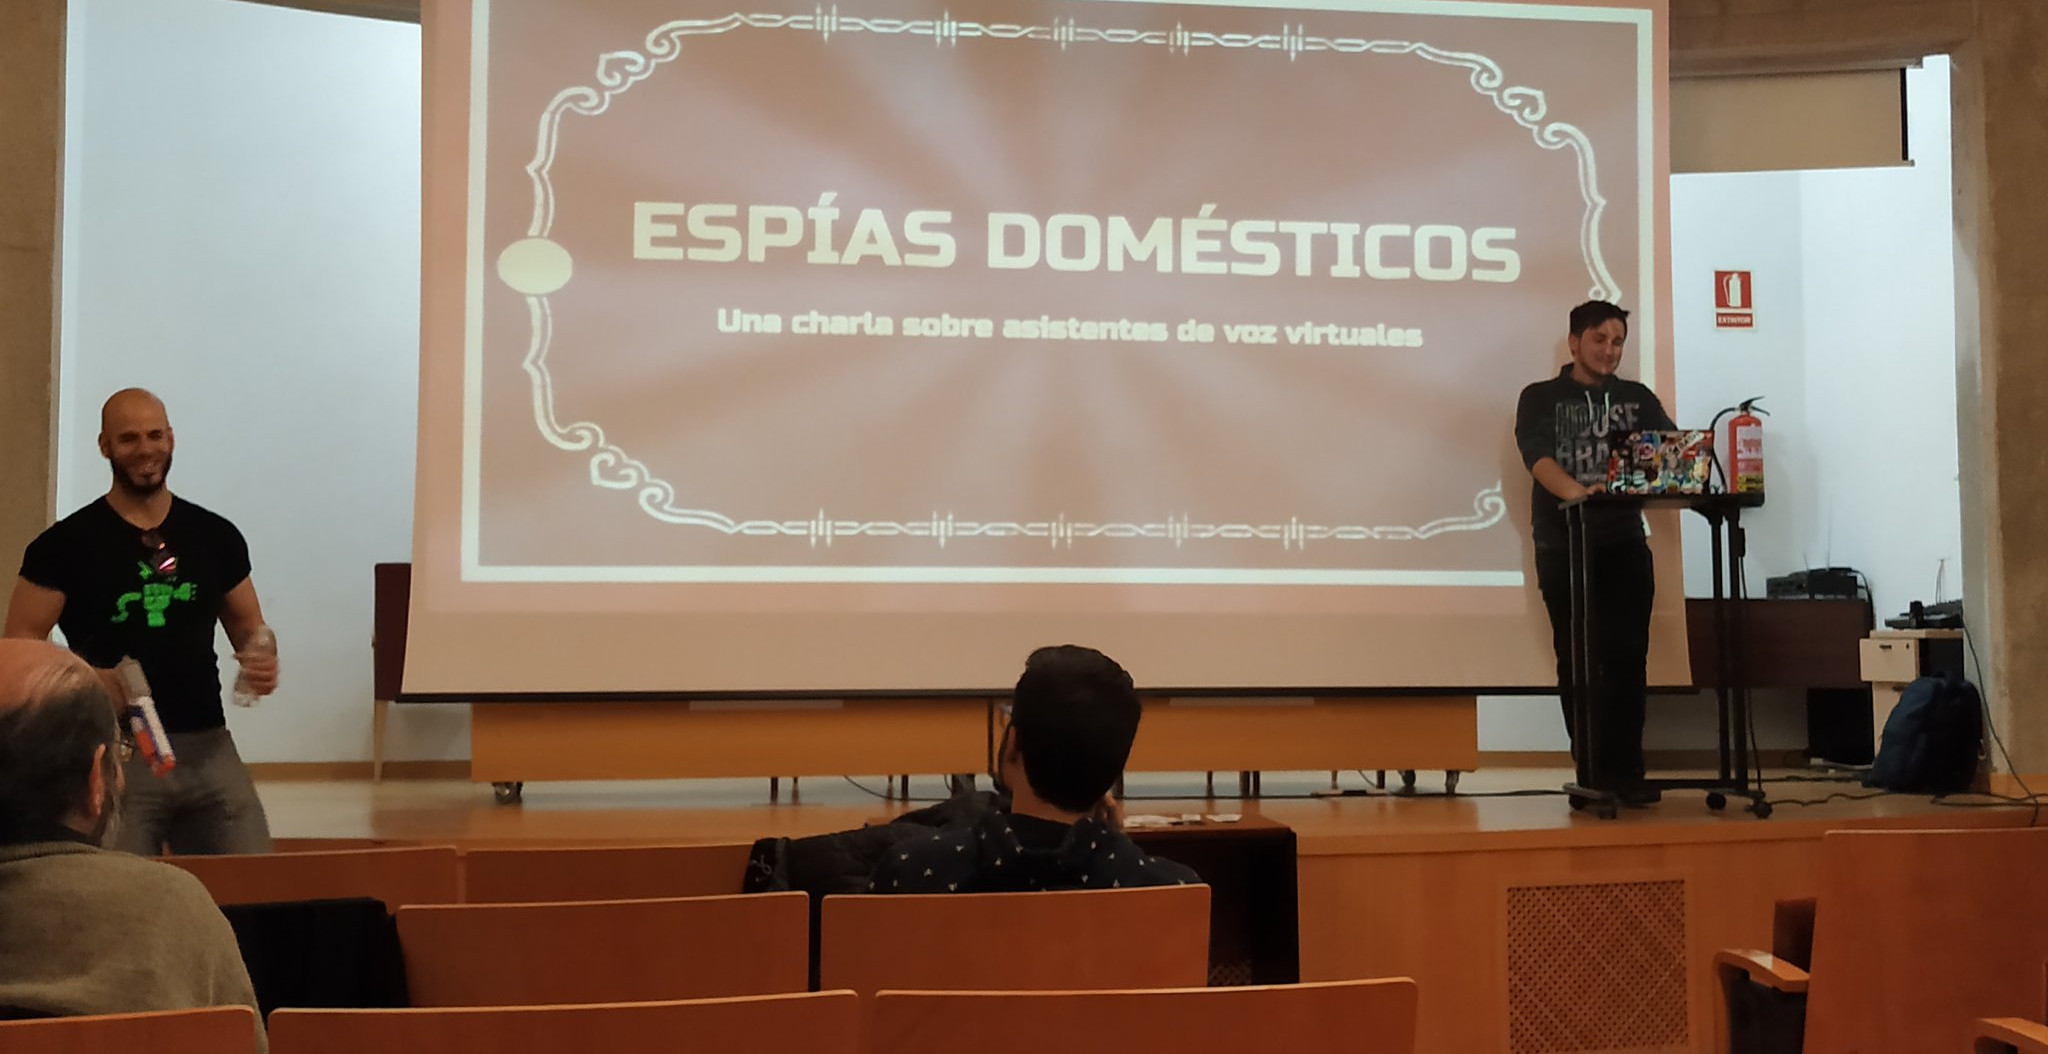 Jorge Cuadrado (Coke). Espías domésticos: Una charla sobre asistentes de voz virtuales. JASYP '19.